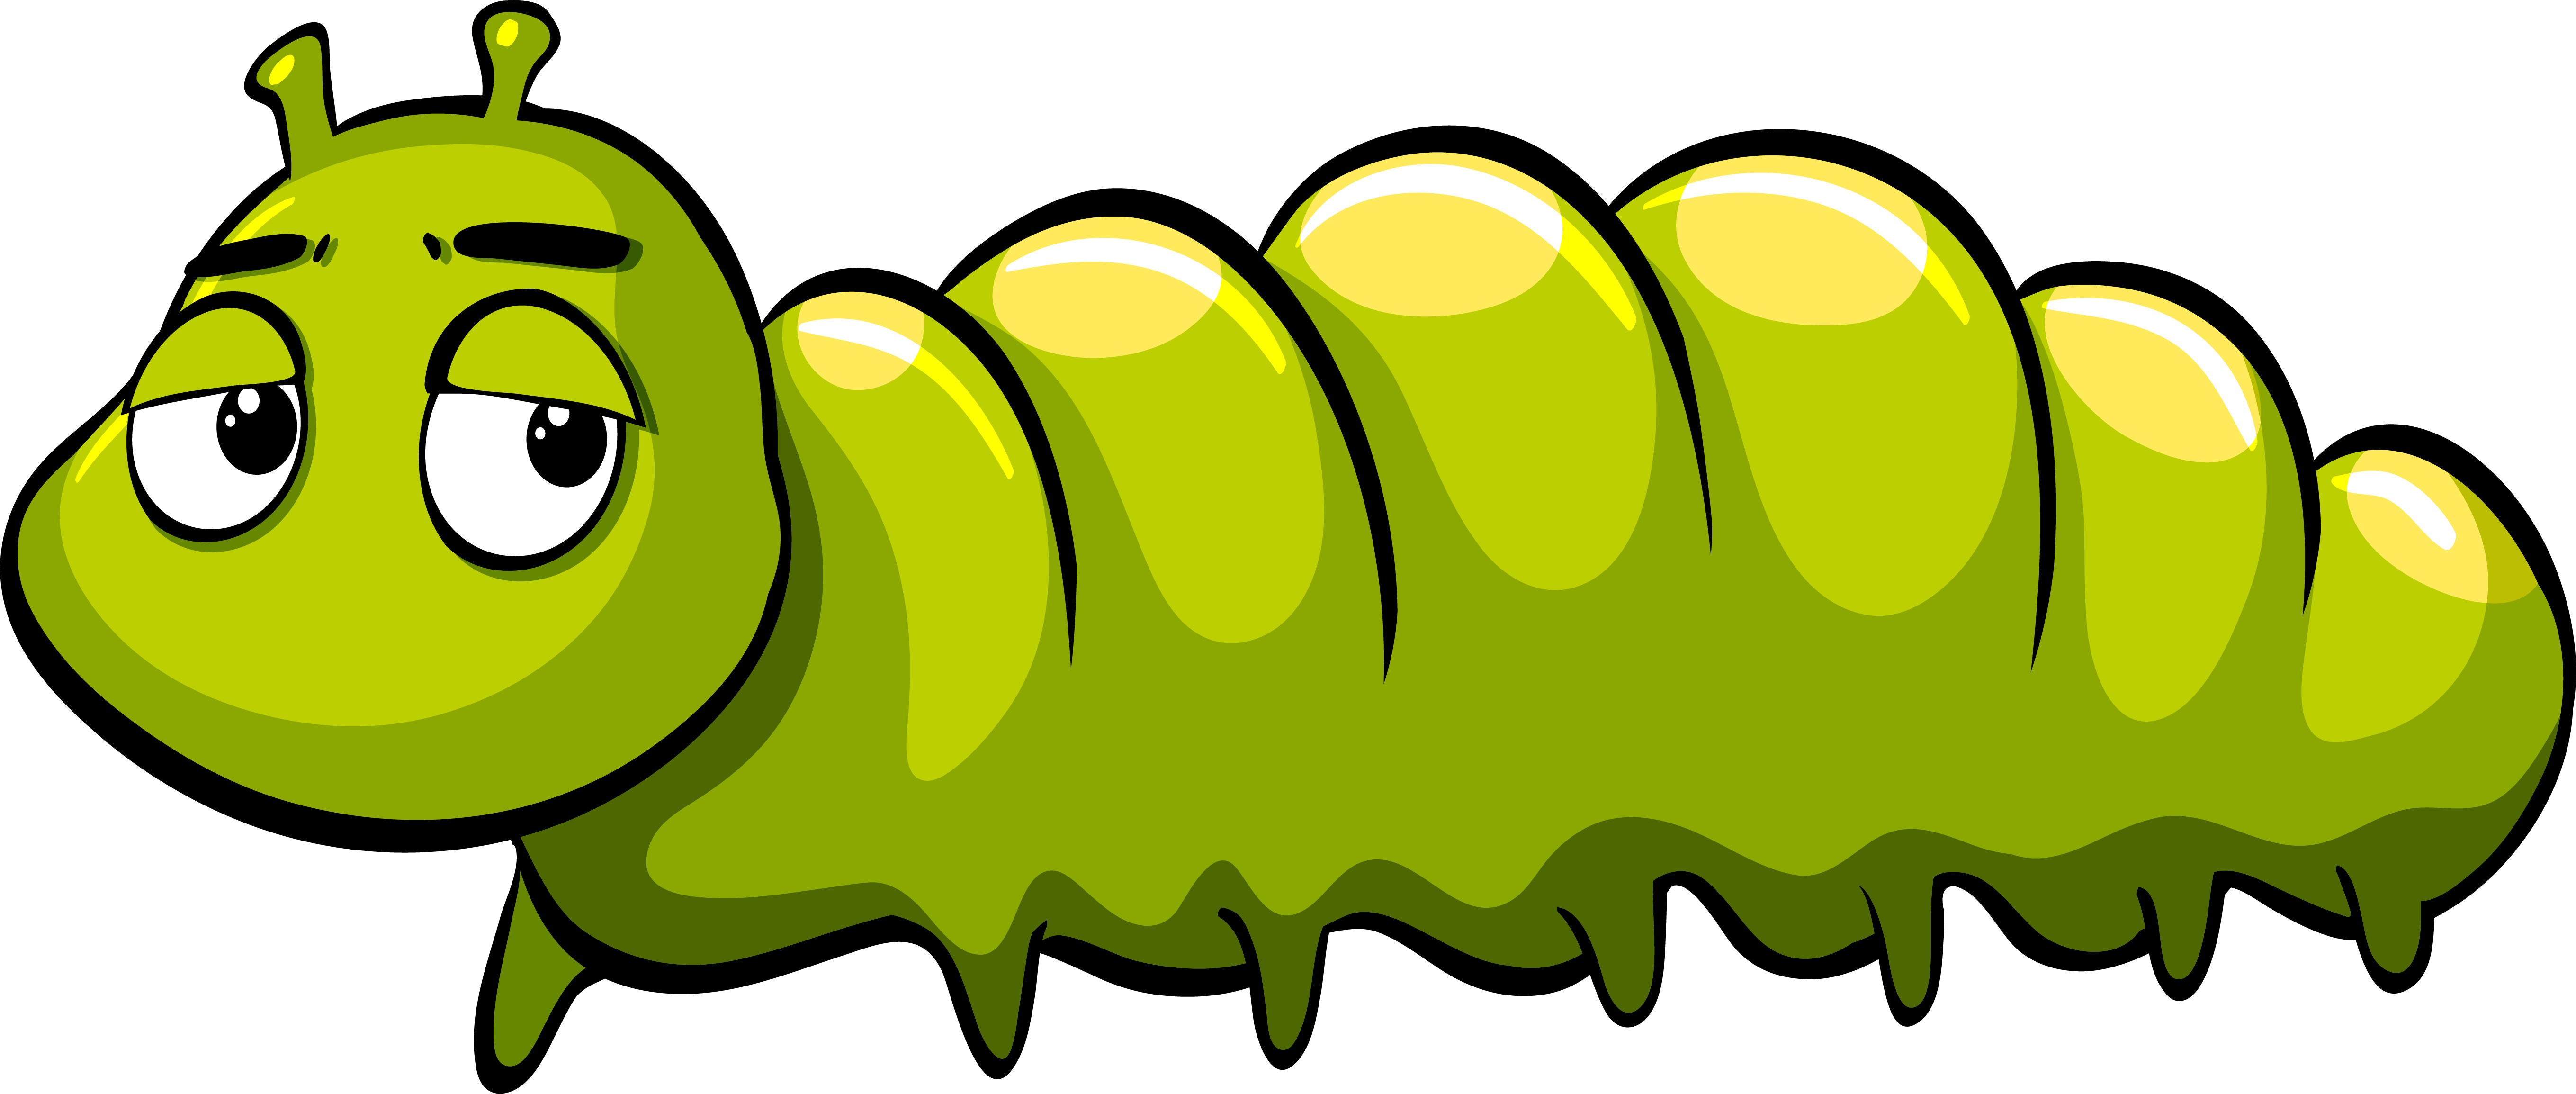 Royaltyfree caterpillar illustration.